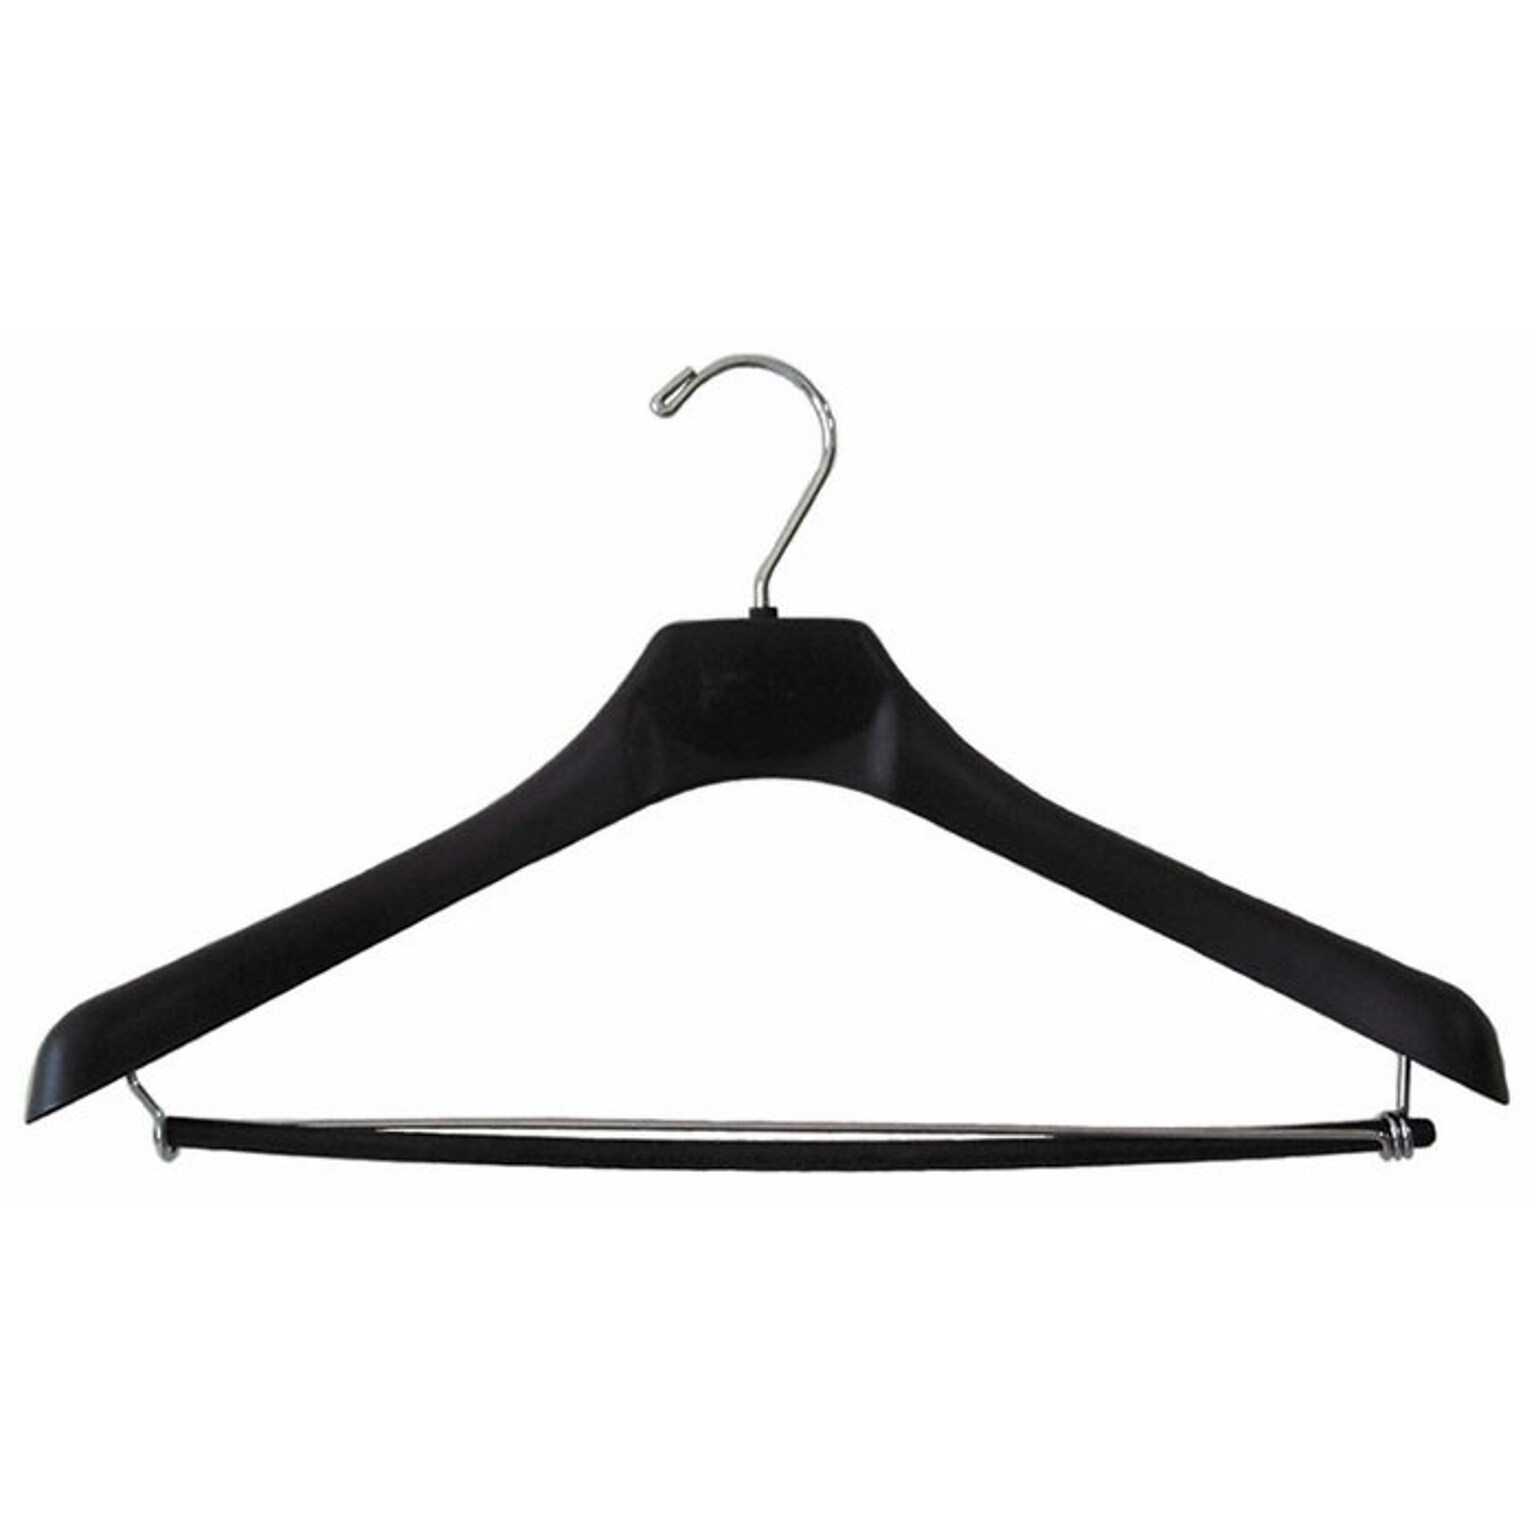 NAHANCO 18 Plastic Concave Wide Shouldered Suit Hanger, Chrome Hook, Black, 50/Pack